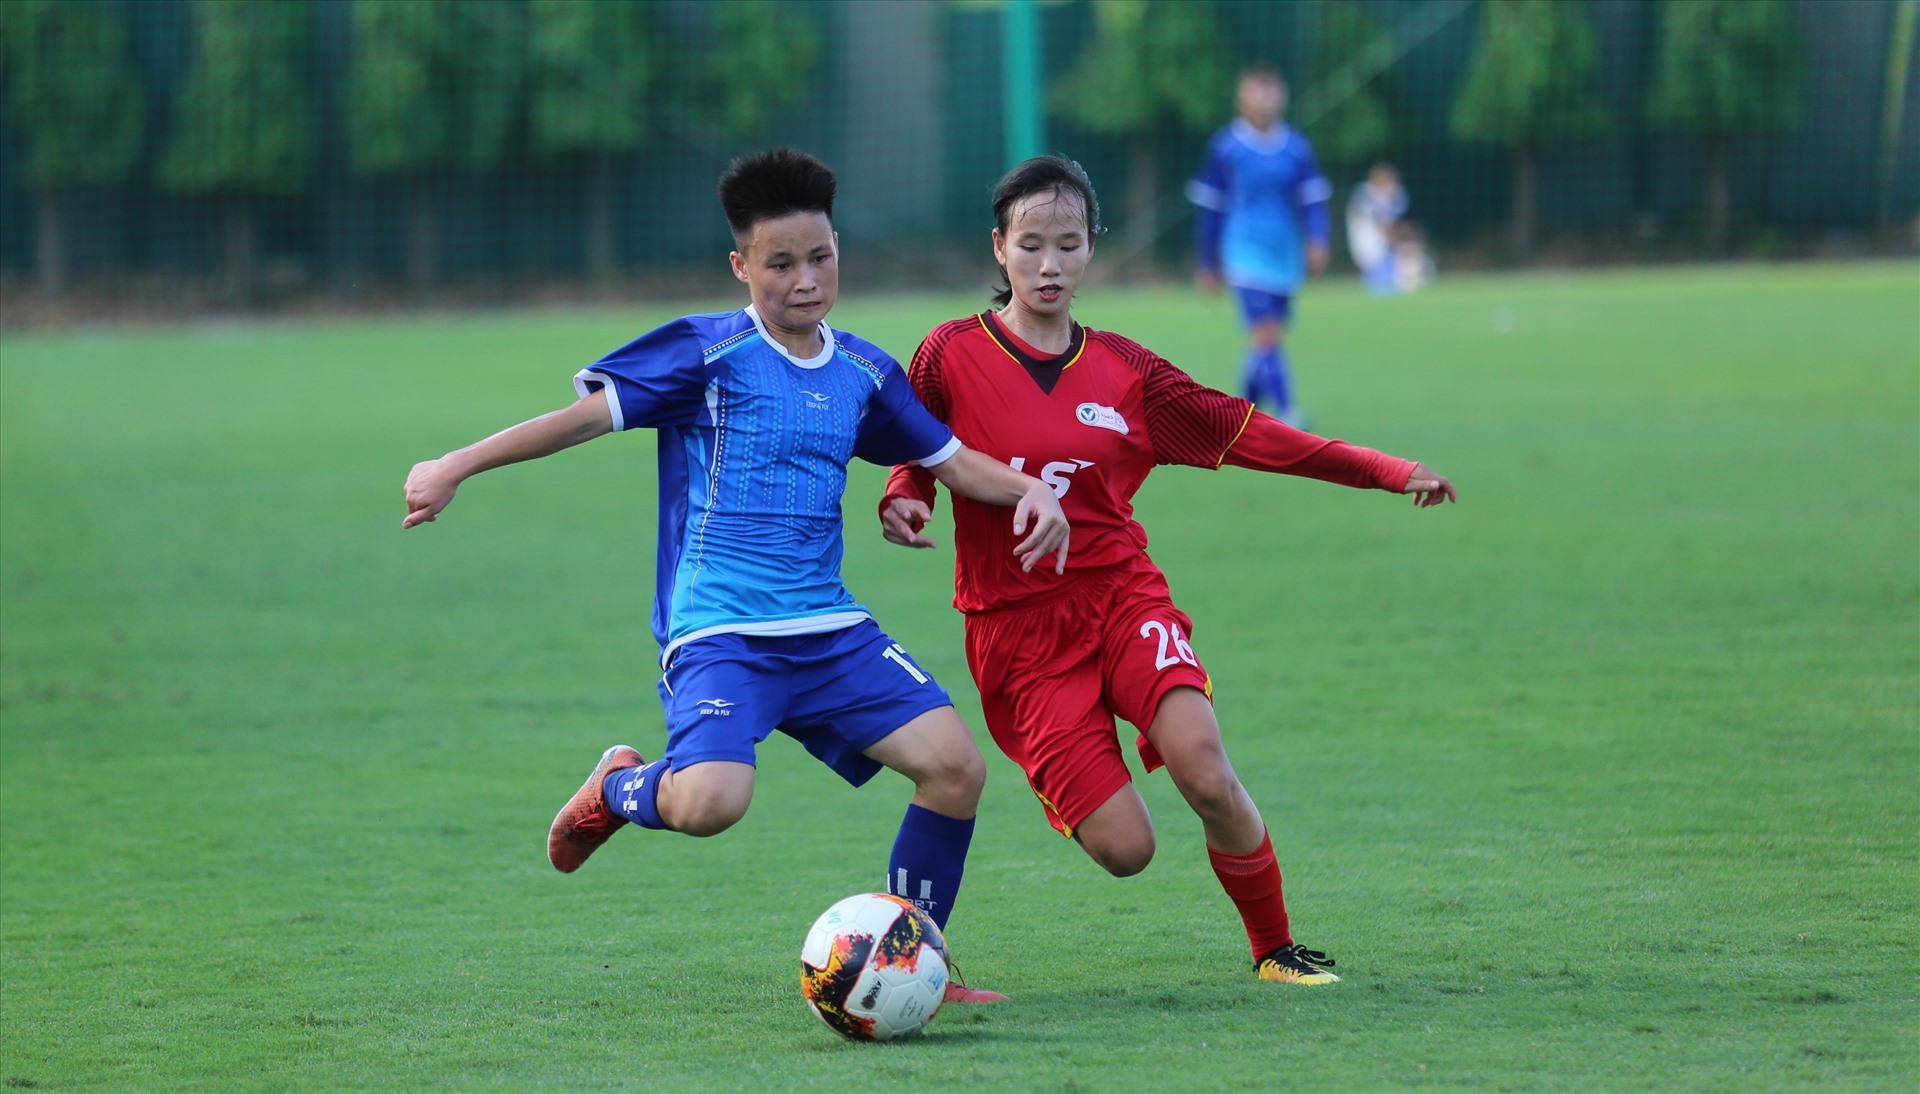 Loạt trận cuối cùng U19 nữ quốc gia diễn ra vô cùng kịch tính khi Thành phố Hồ Chí Minh buộc phải thắng Sơn La để chờ Hà Nam xảy chân. Đội bóng thành phố mang tên Bác đã làm được với chiến thắng 2-0 ở trận đấu sớm.